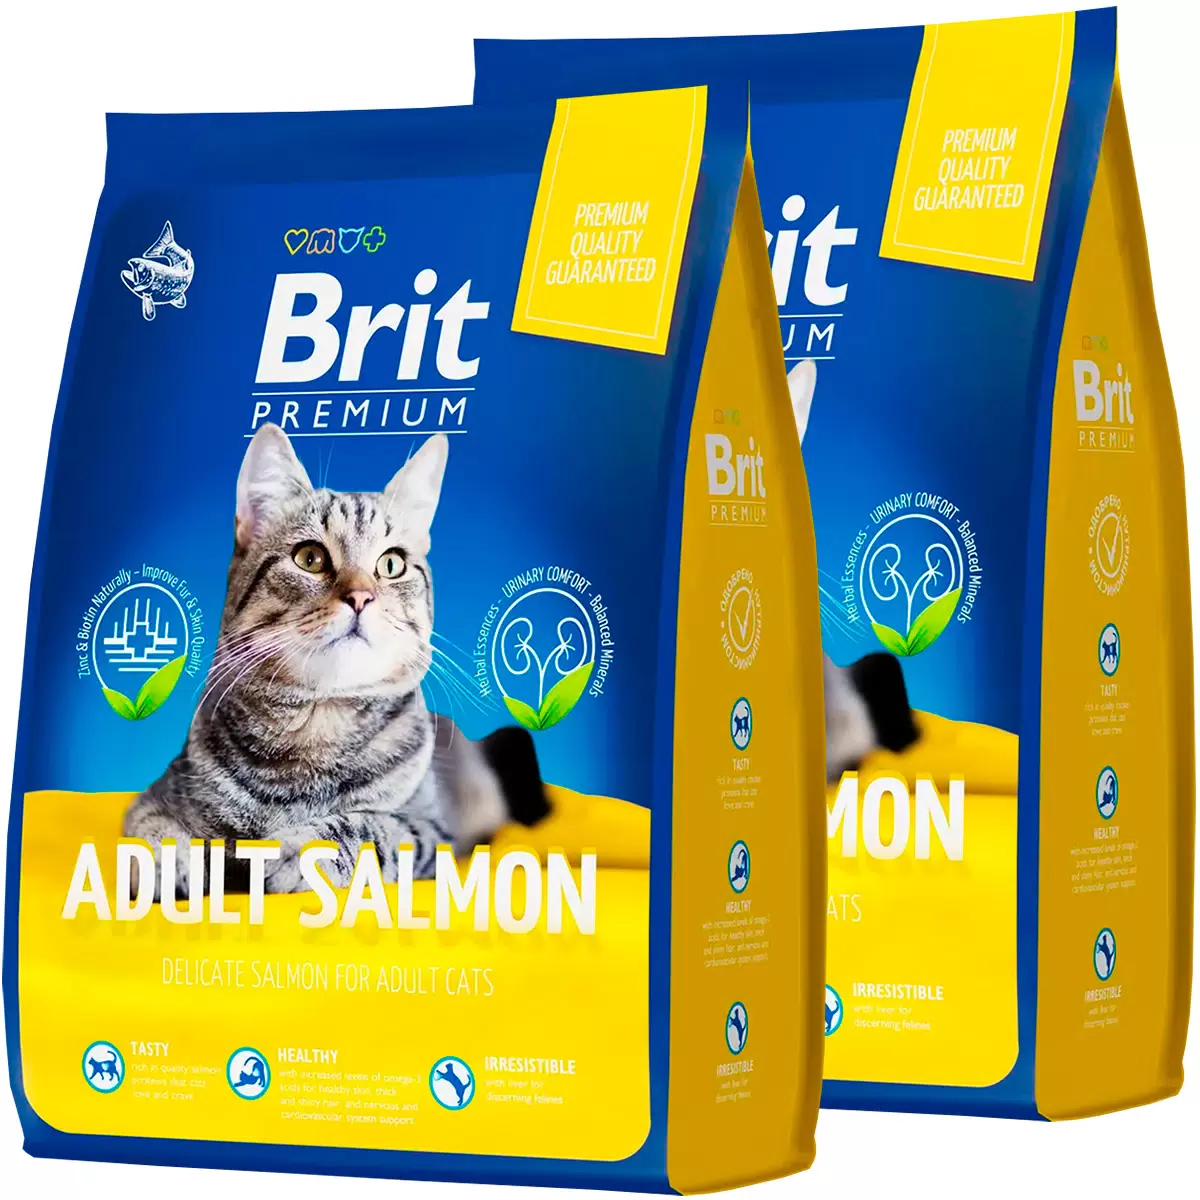 Brit Premium, Сухой корм для взрослых кошек со вкусом лосося, 2 кг